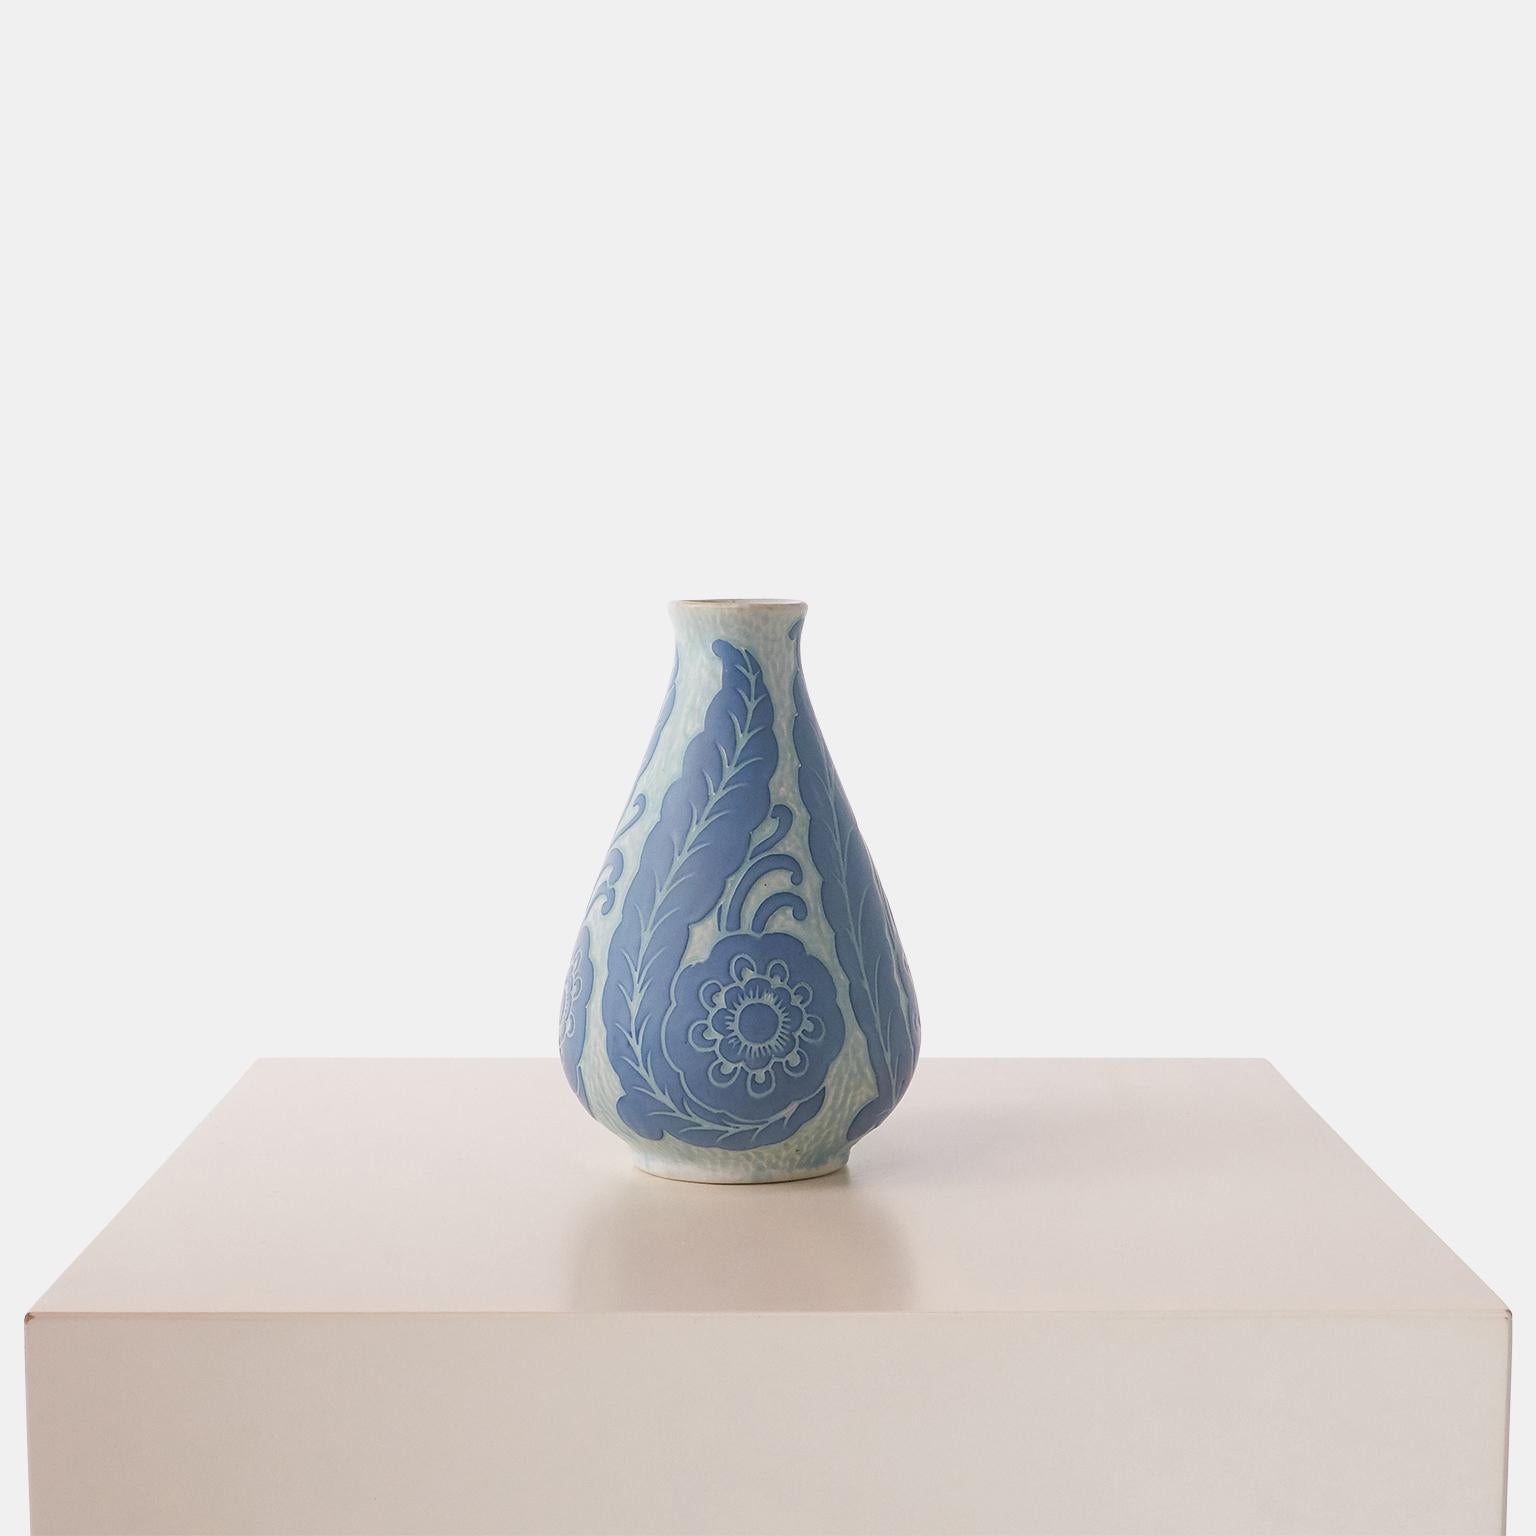 Vase bleu fait main par Josef Ekberg pour Gustavsberg. Chaque pièce est unique et décorée selon la technique du Sgrafitto, mise au point par Ekberg lui-même.

Signé  : Gustavsberg, 1920, JE